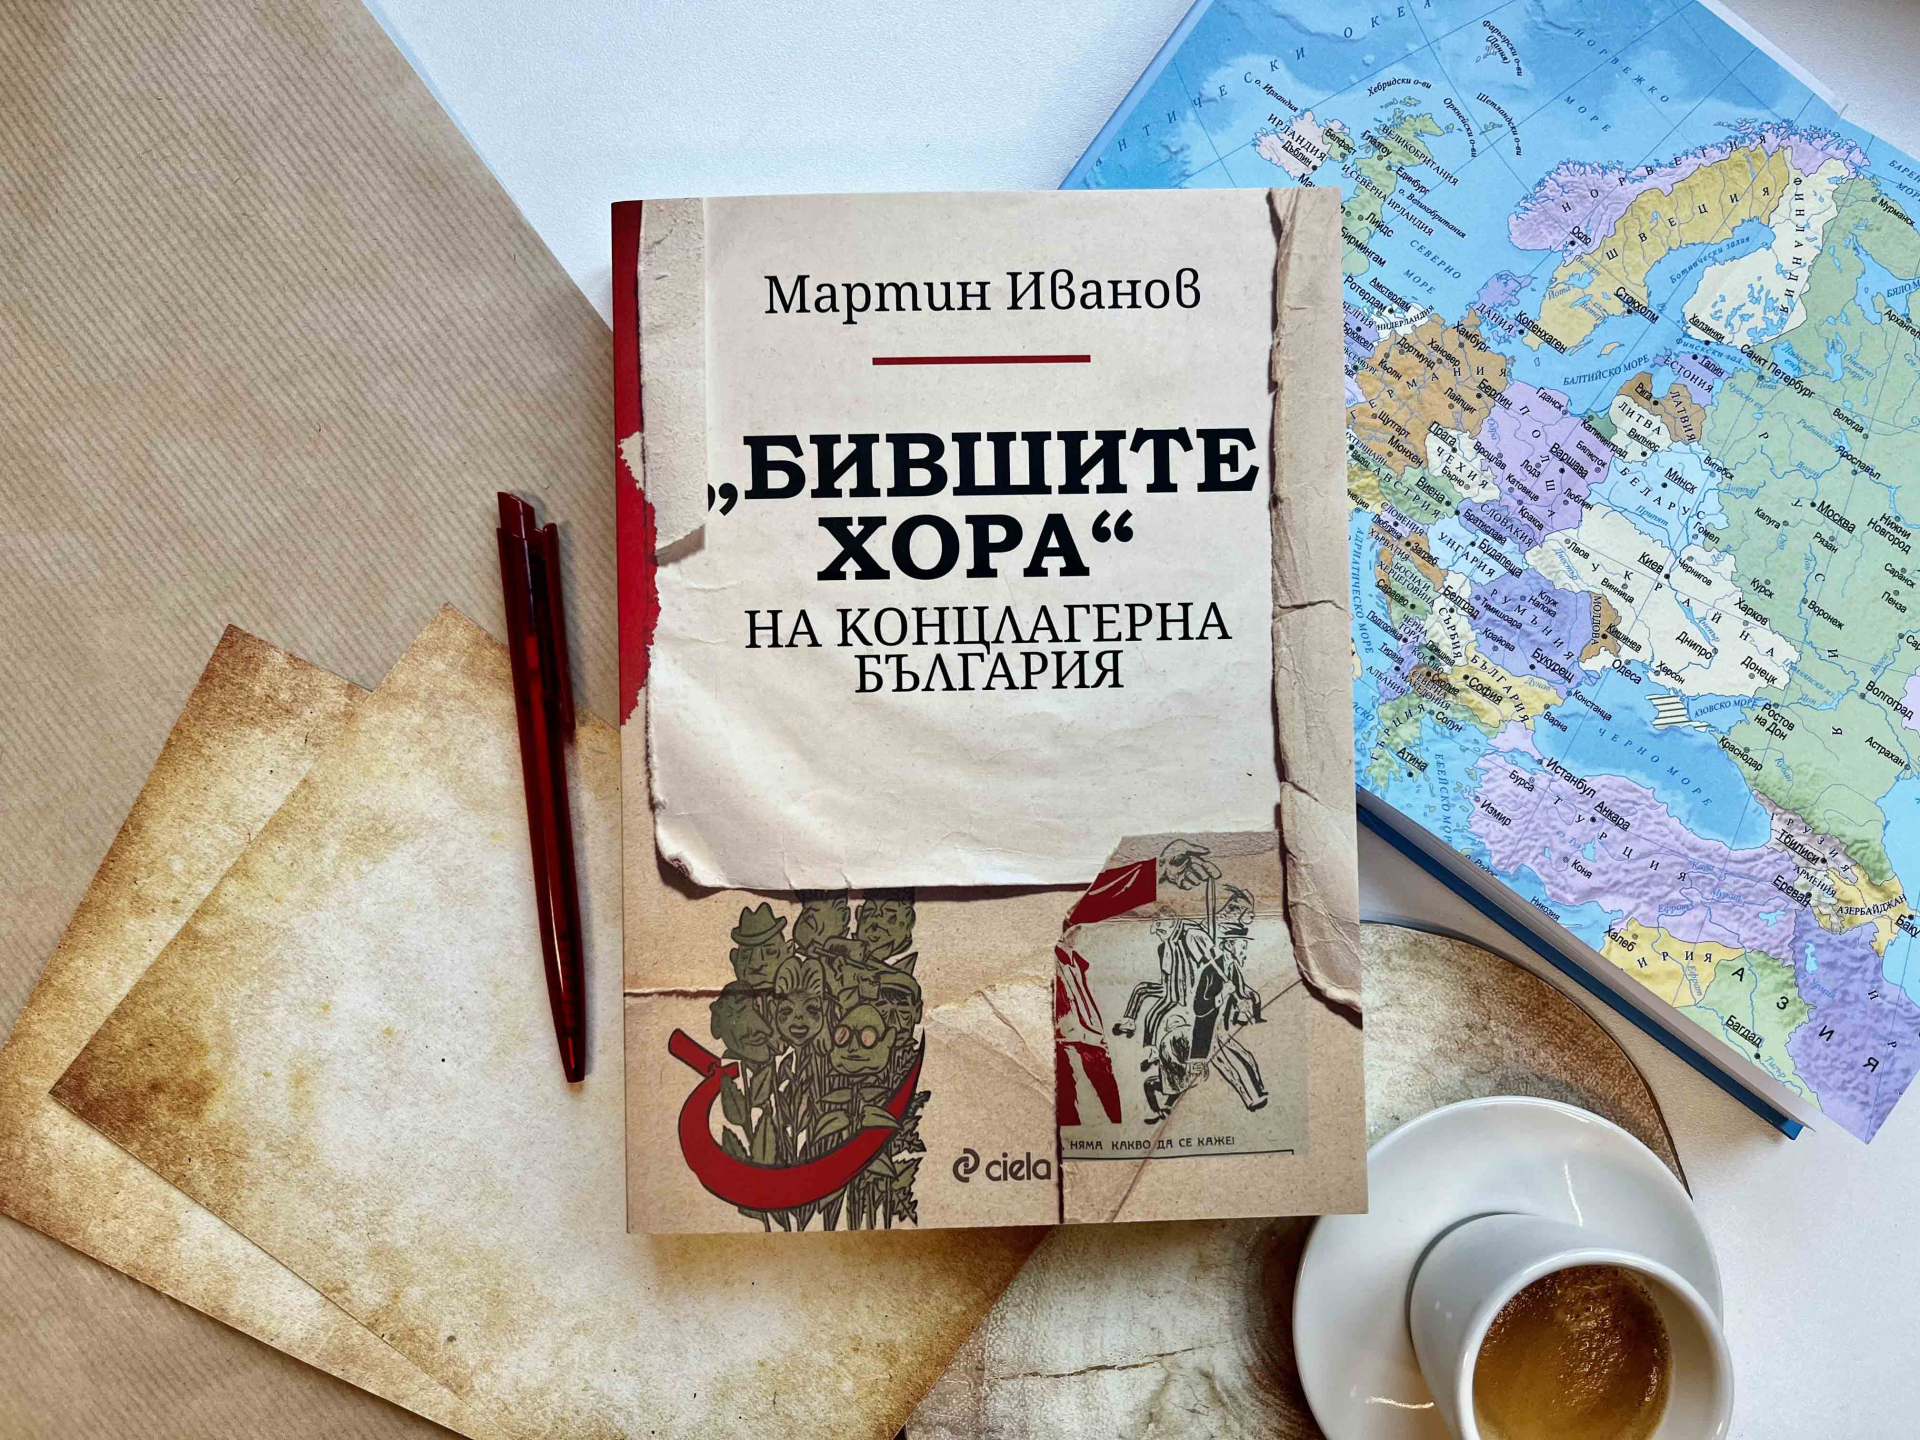 Кои са „Бившите хора“ на концлагерна България“ разкрива изследването на Мартин Иванов